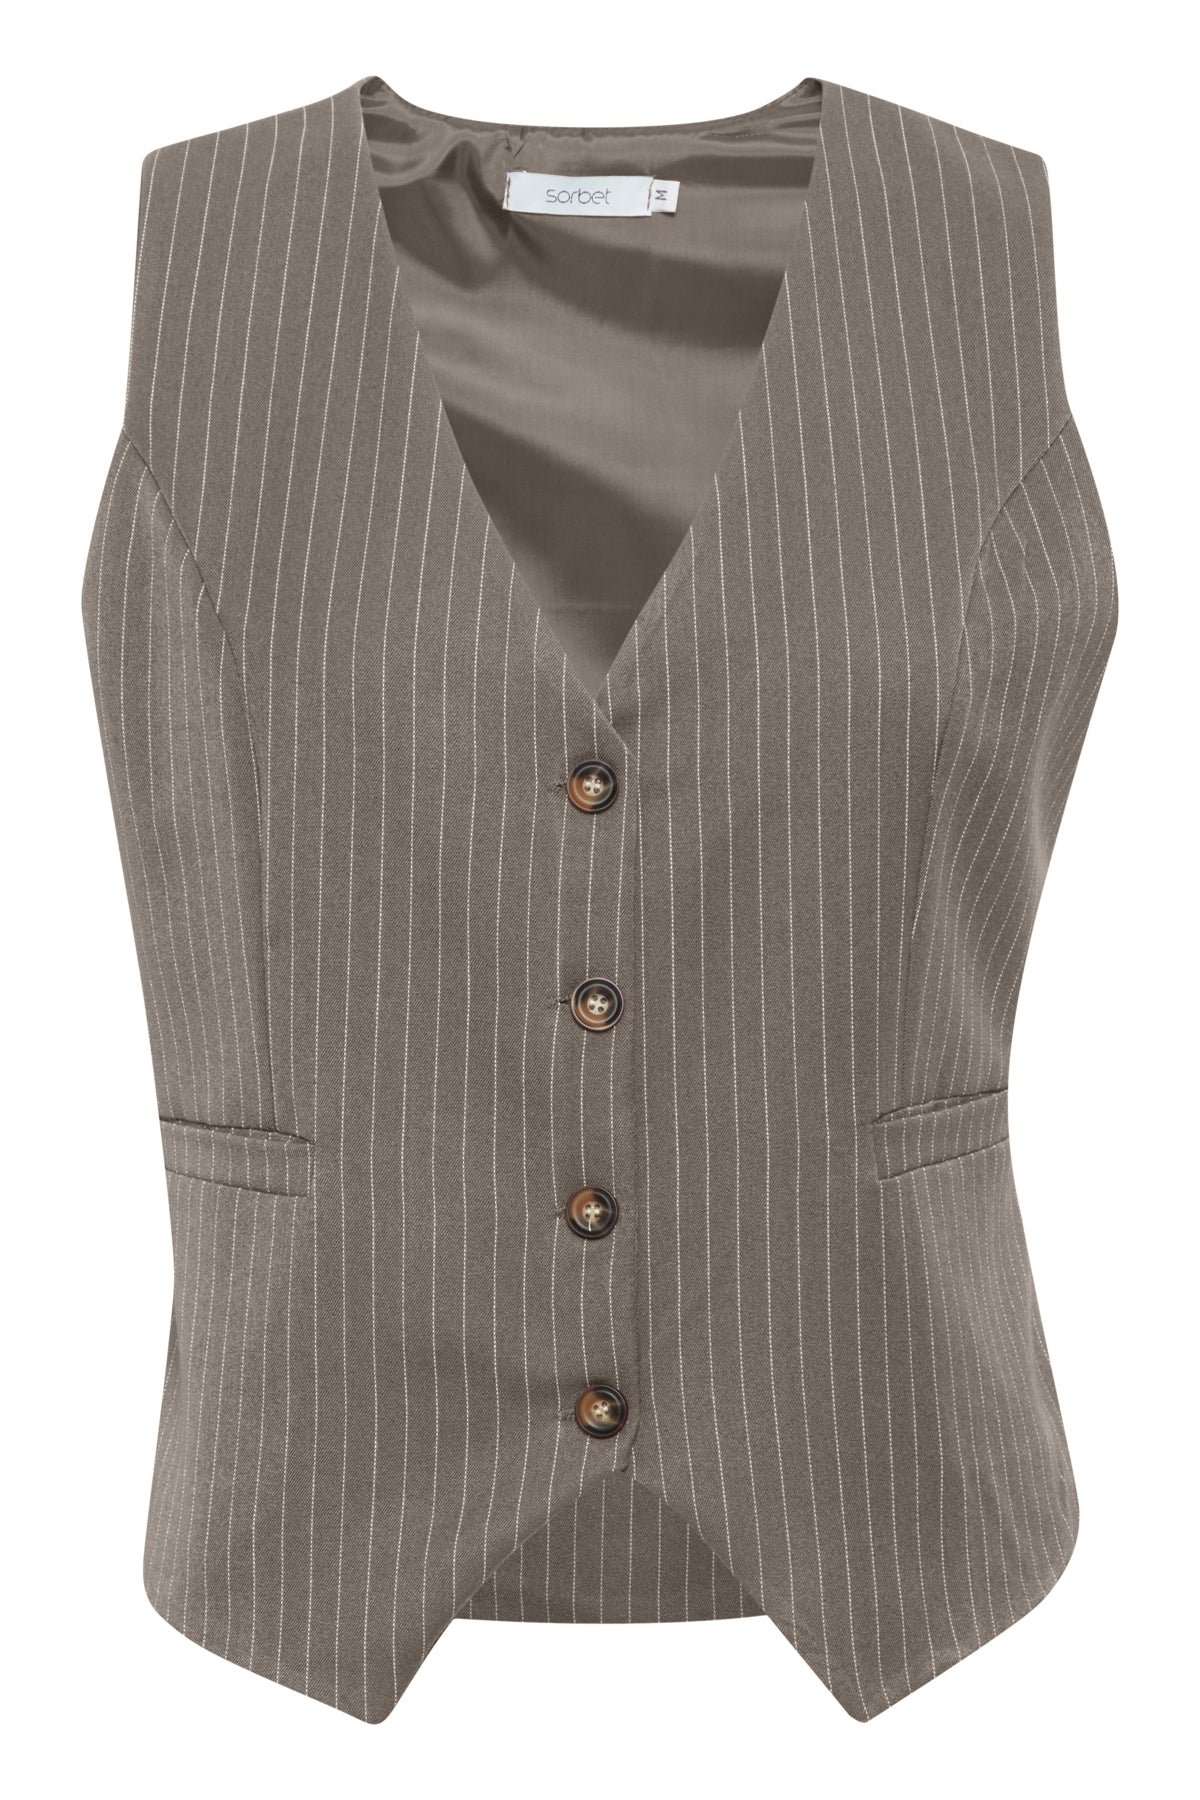 Bøjle 189 - Sorbet SBDiego Waistcoat, Grey Melange